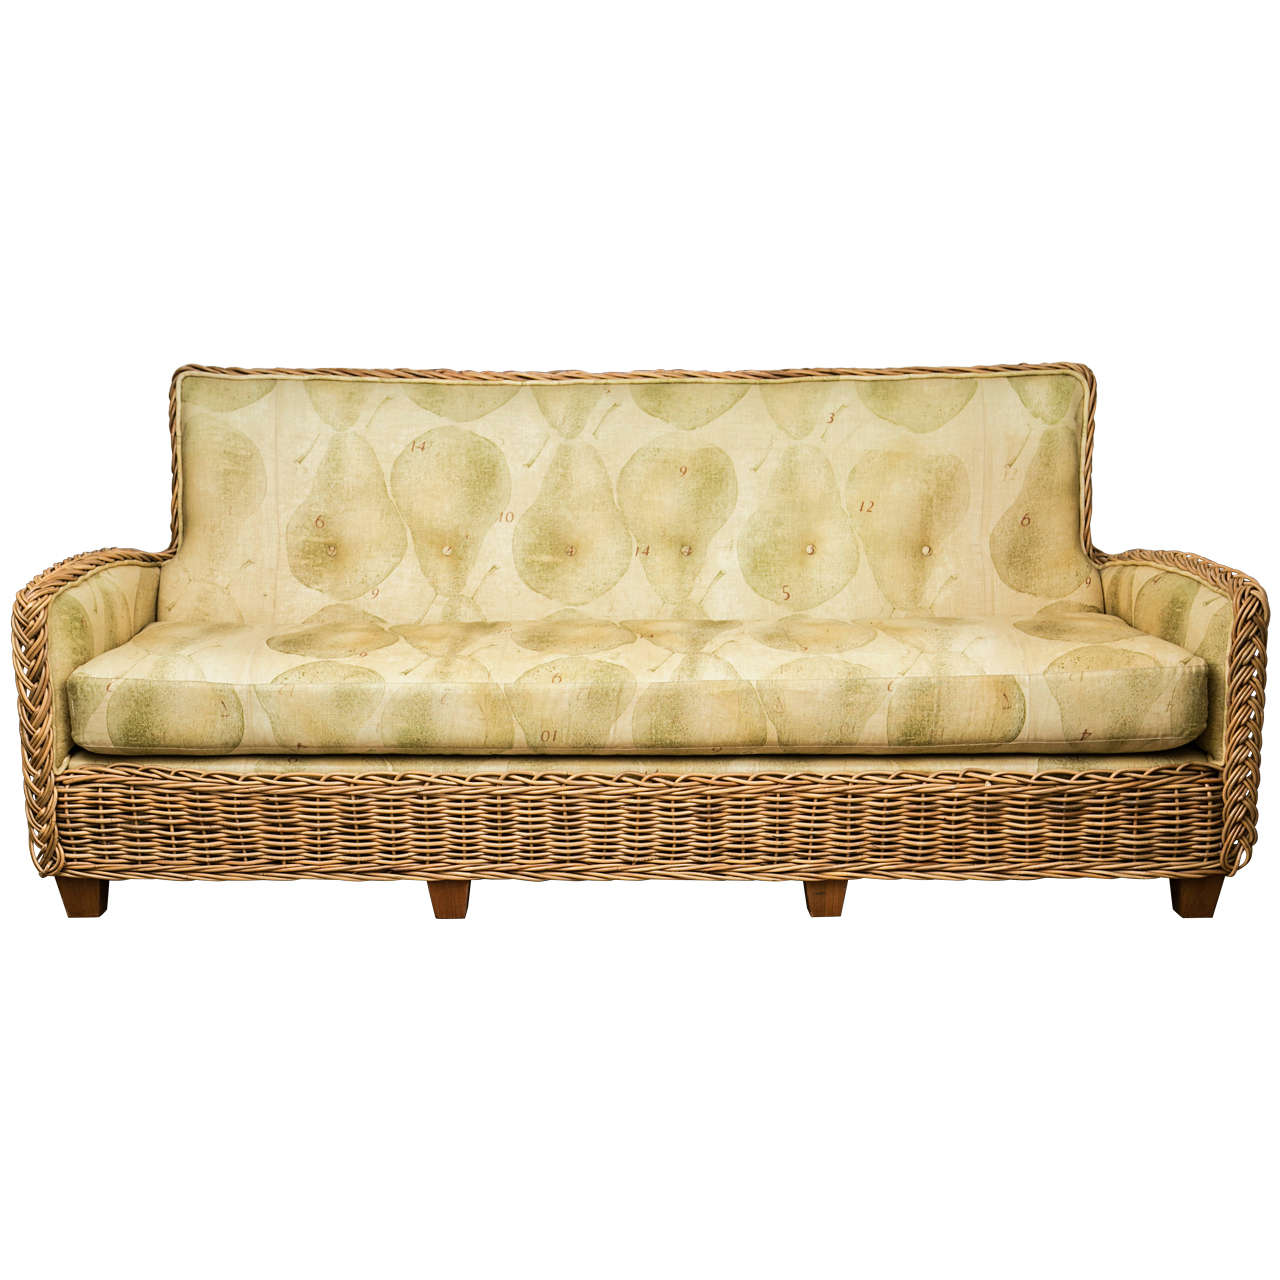 Wicker Works Rattan Sofa With Belgin Linen Upholstery